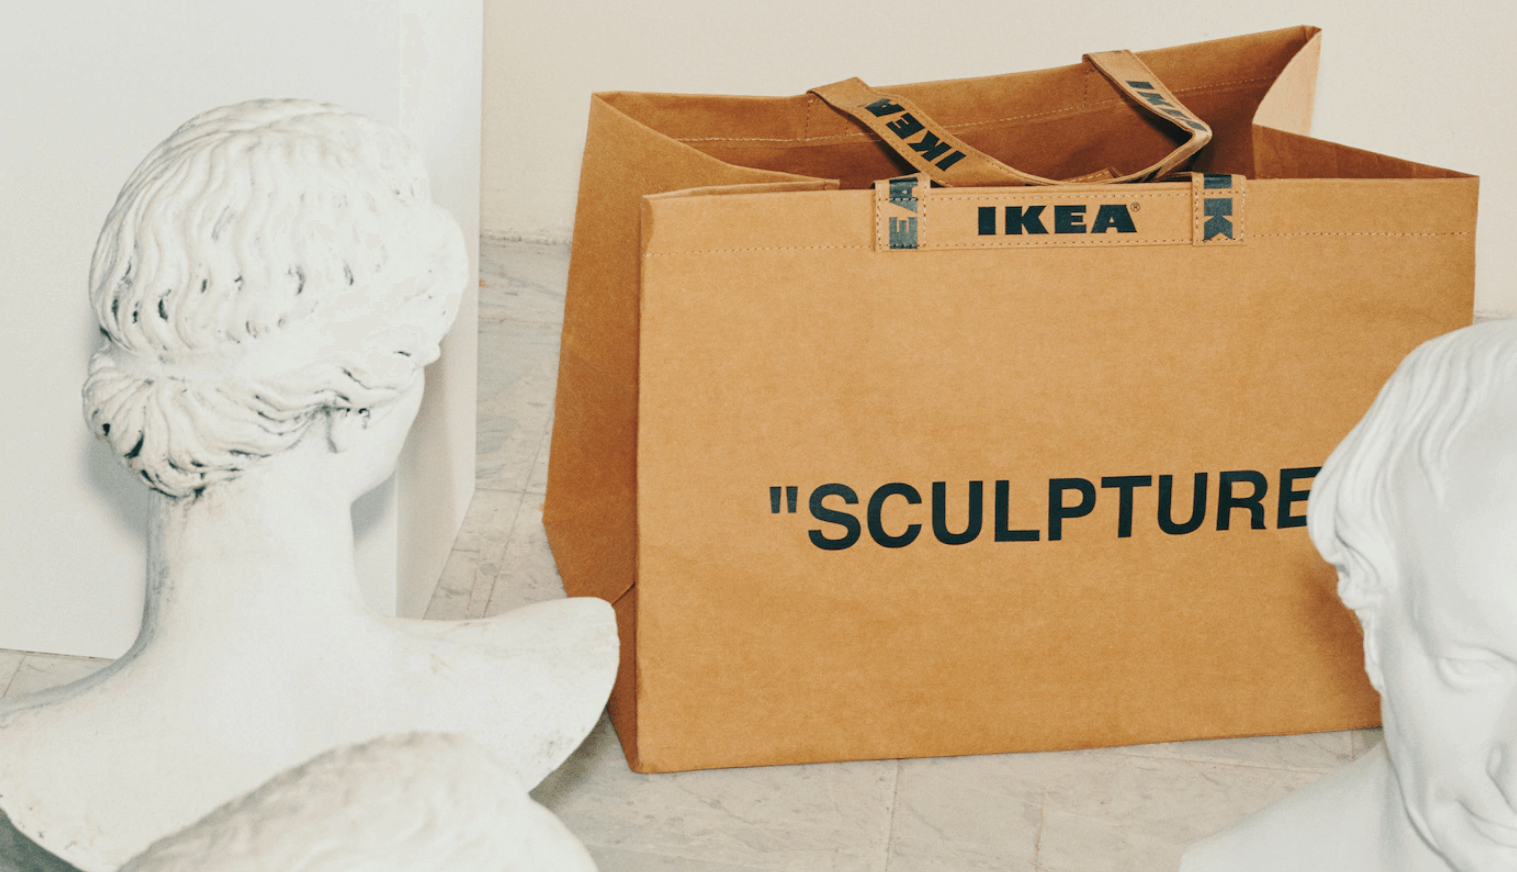 Colección de Ikea para jóvenes